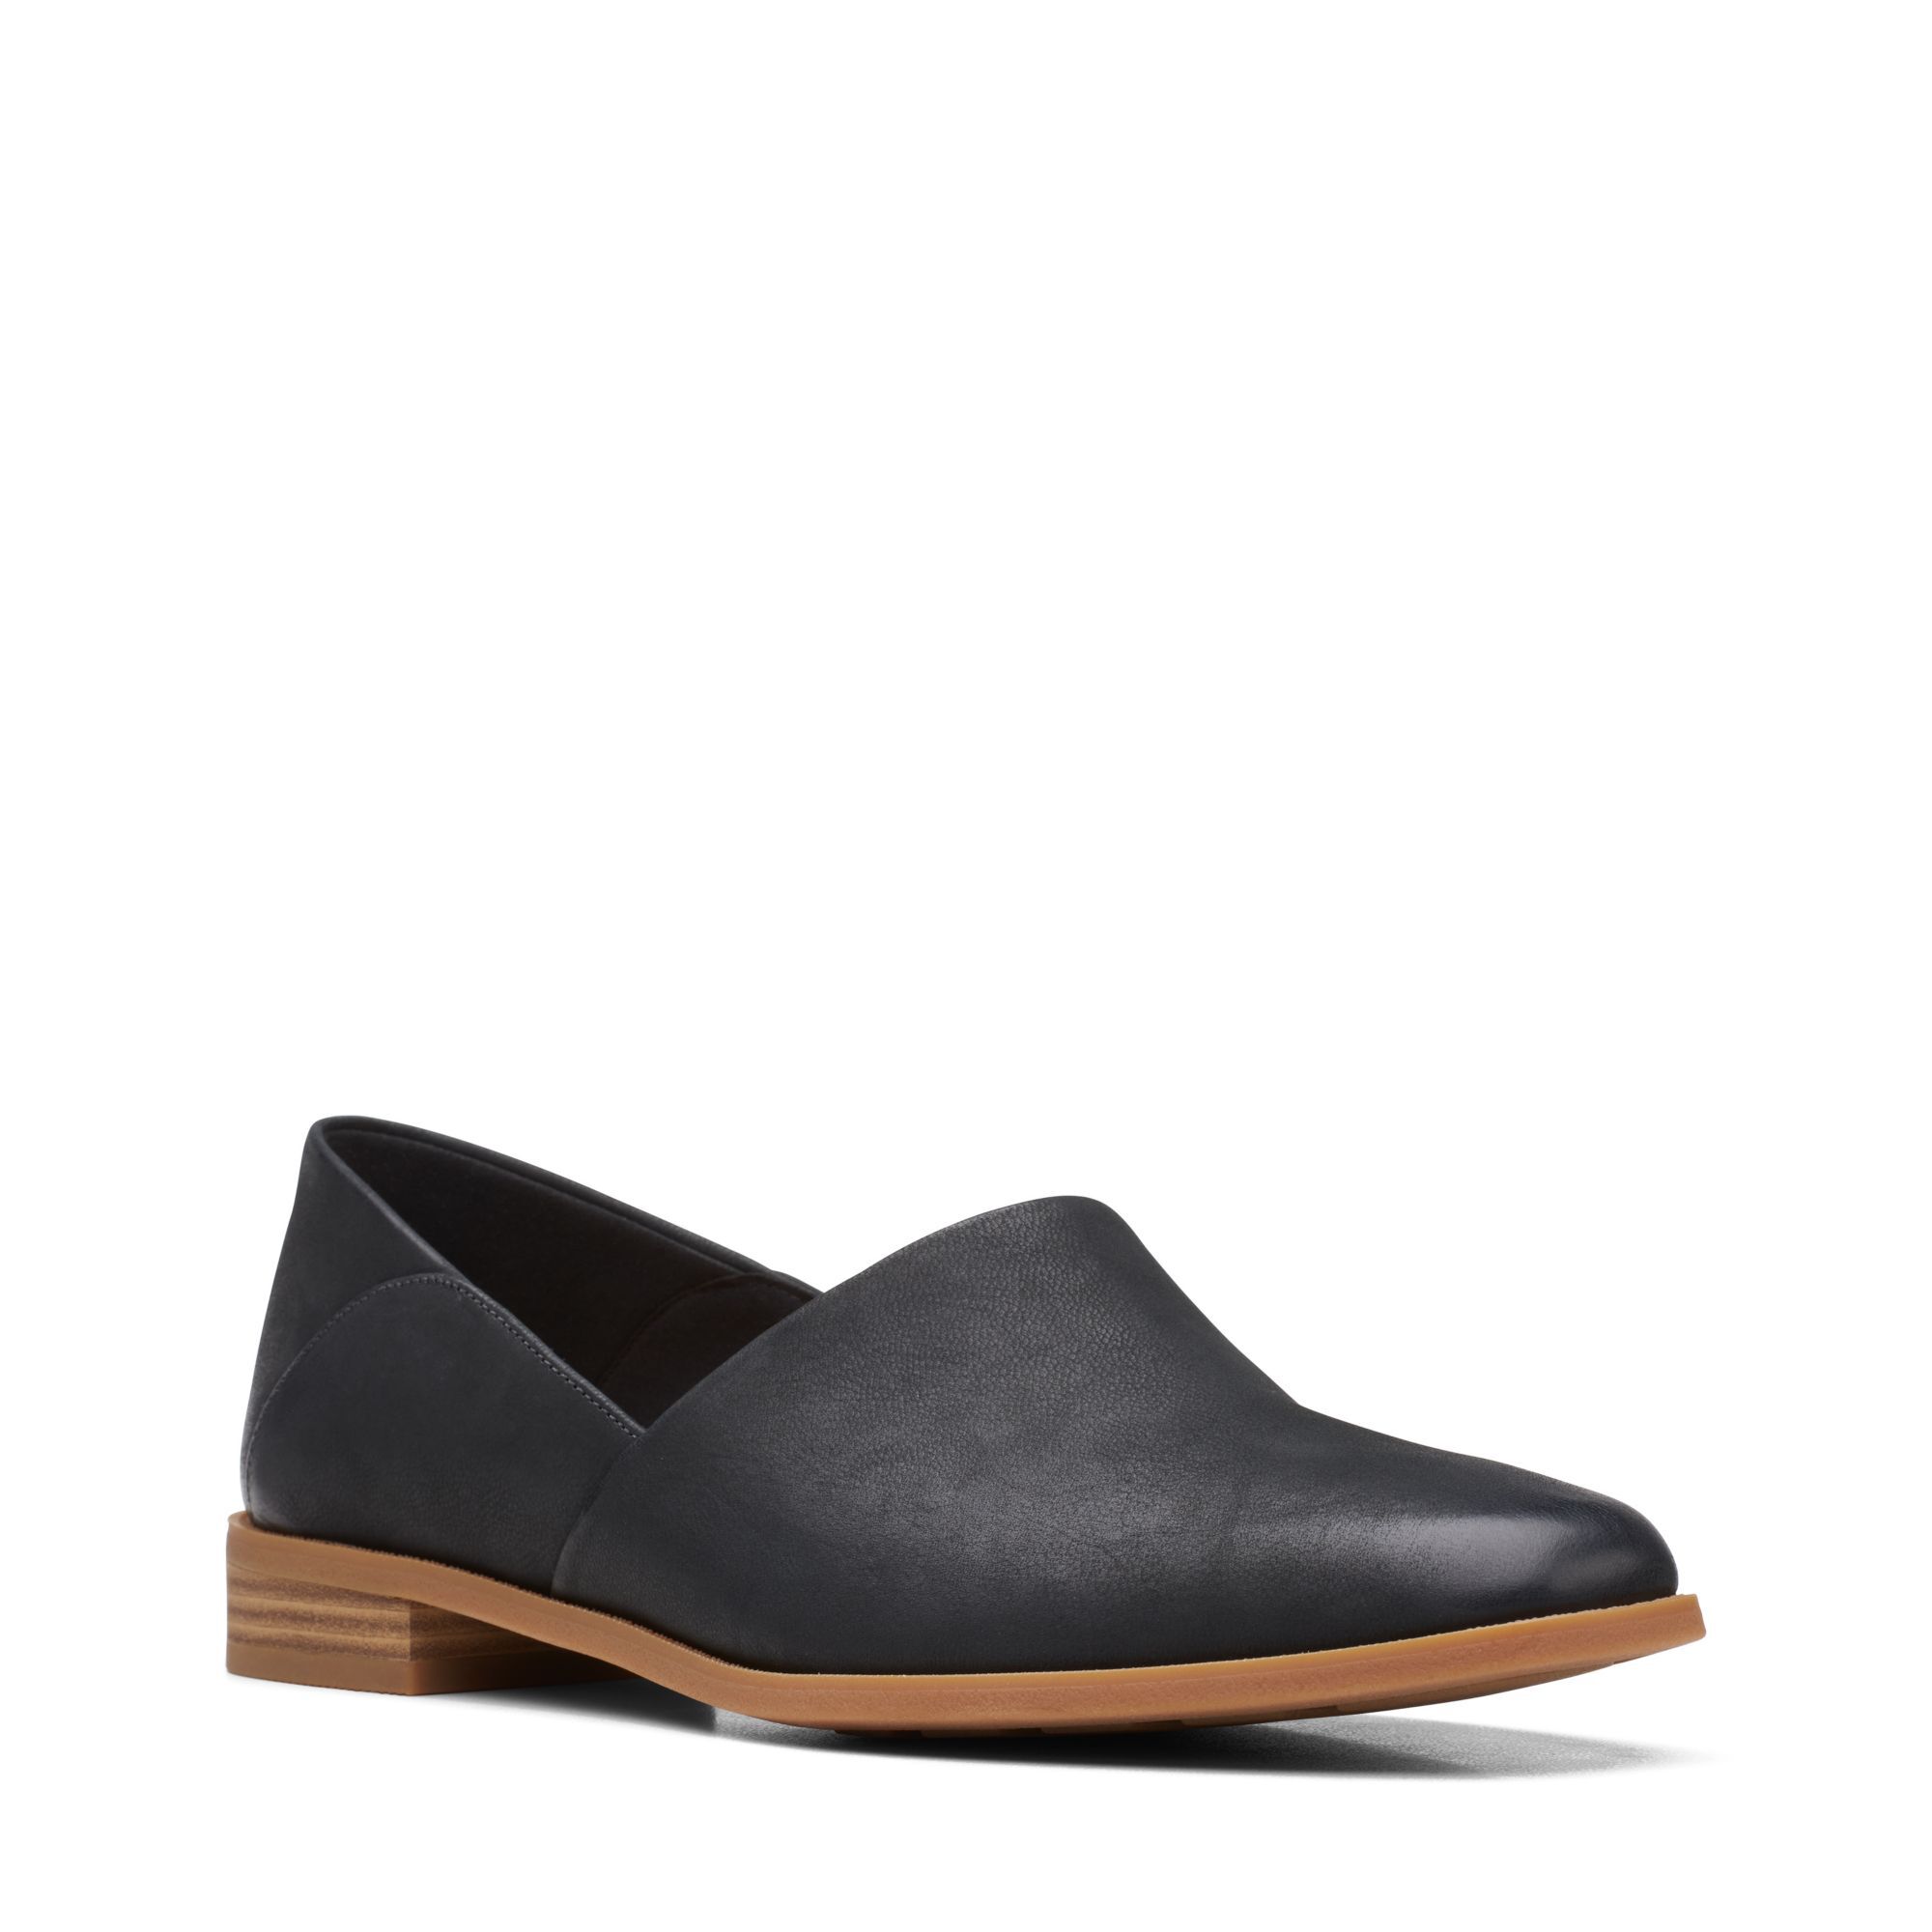 Женские туфли-лодочки Clarks, черные, цвет черный, размер 37.5 - фото 1